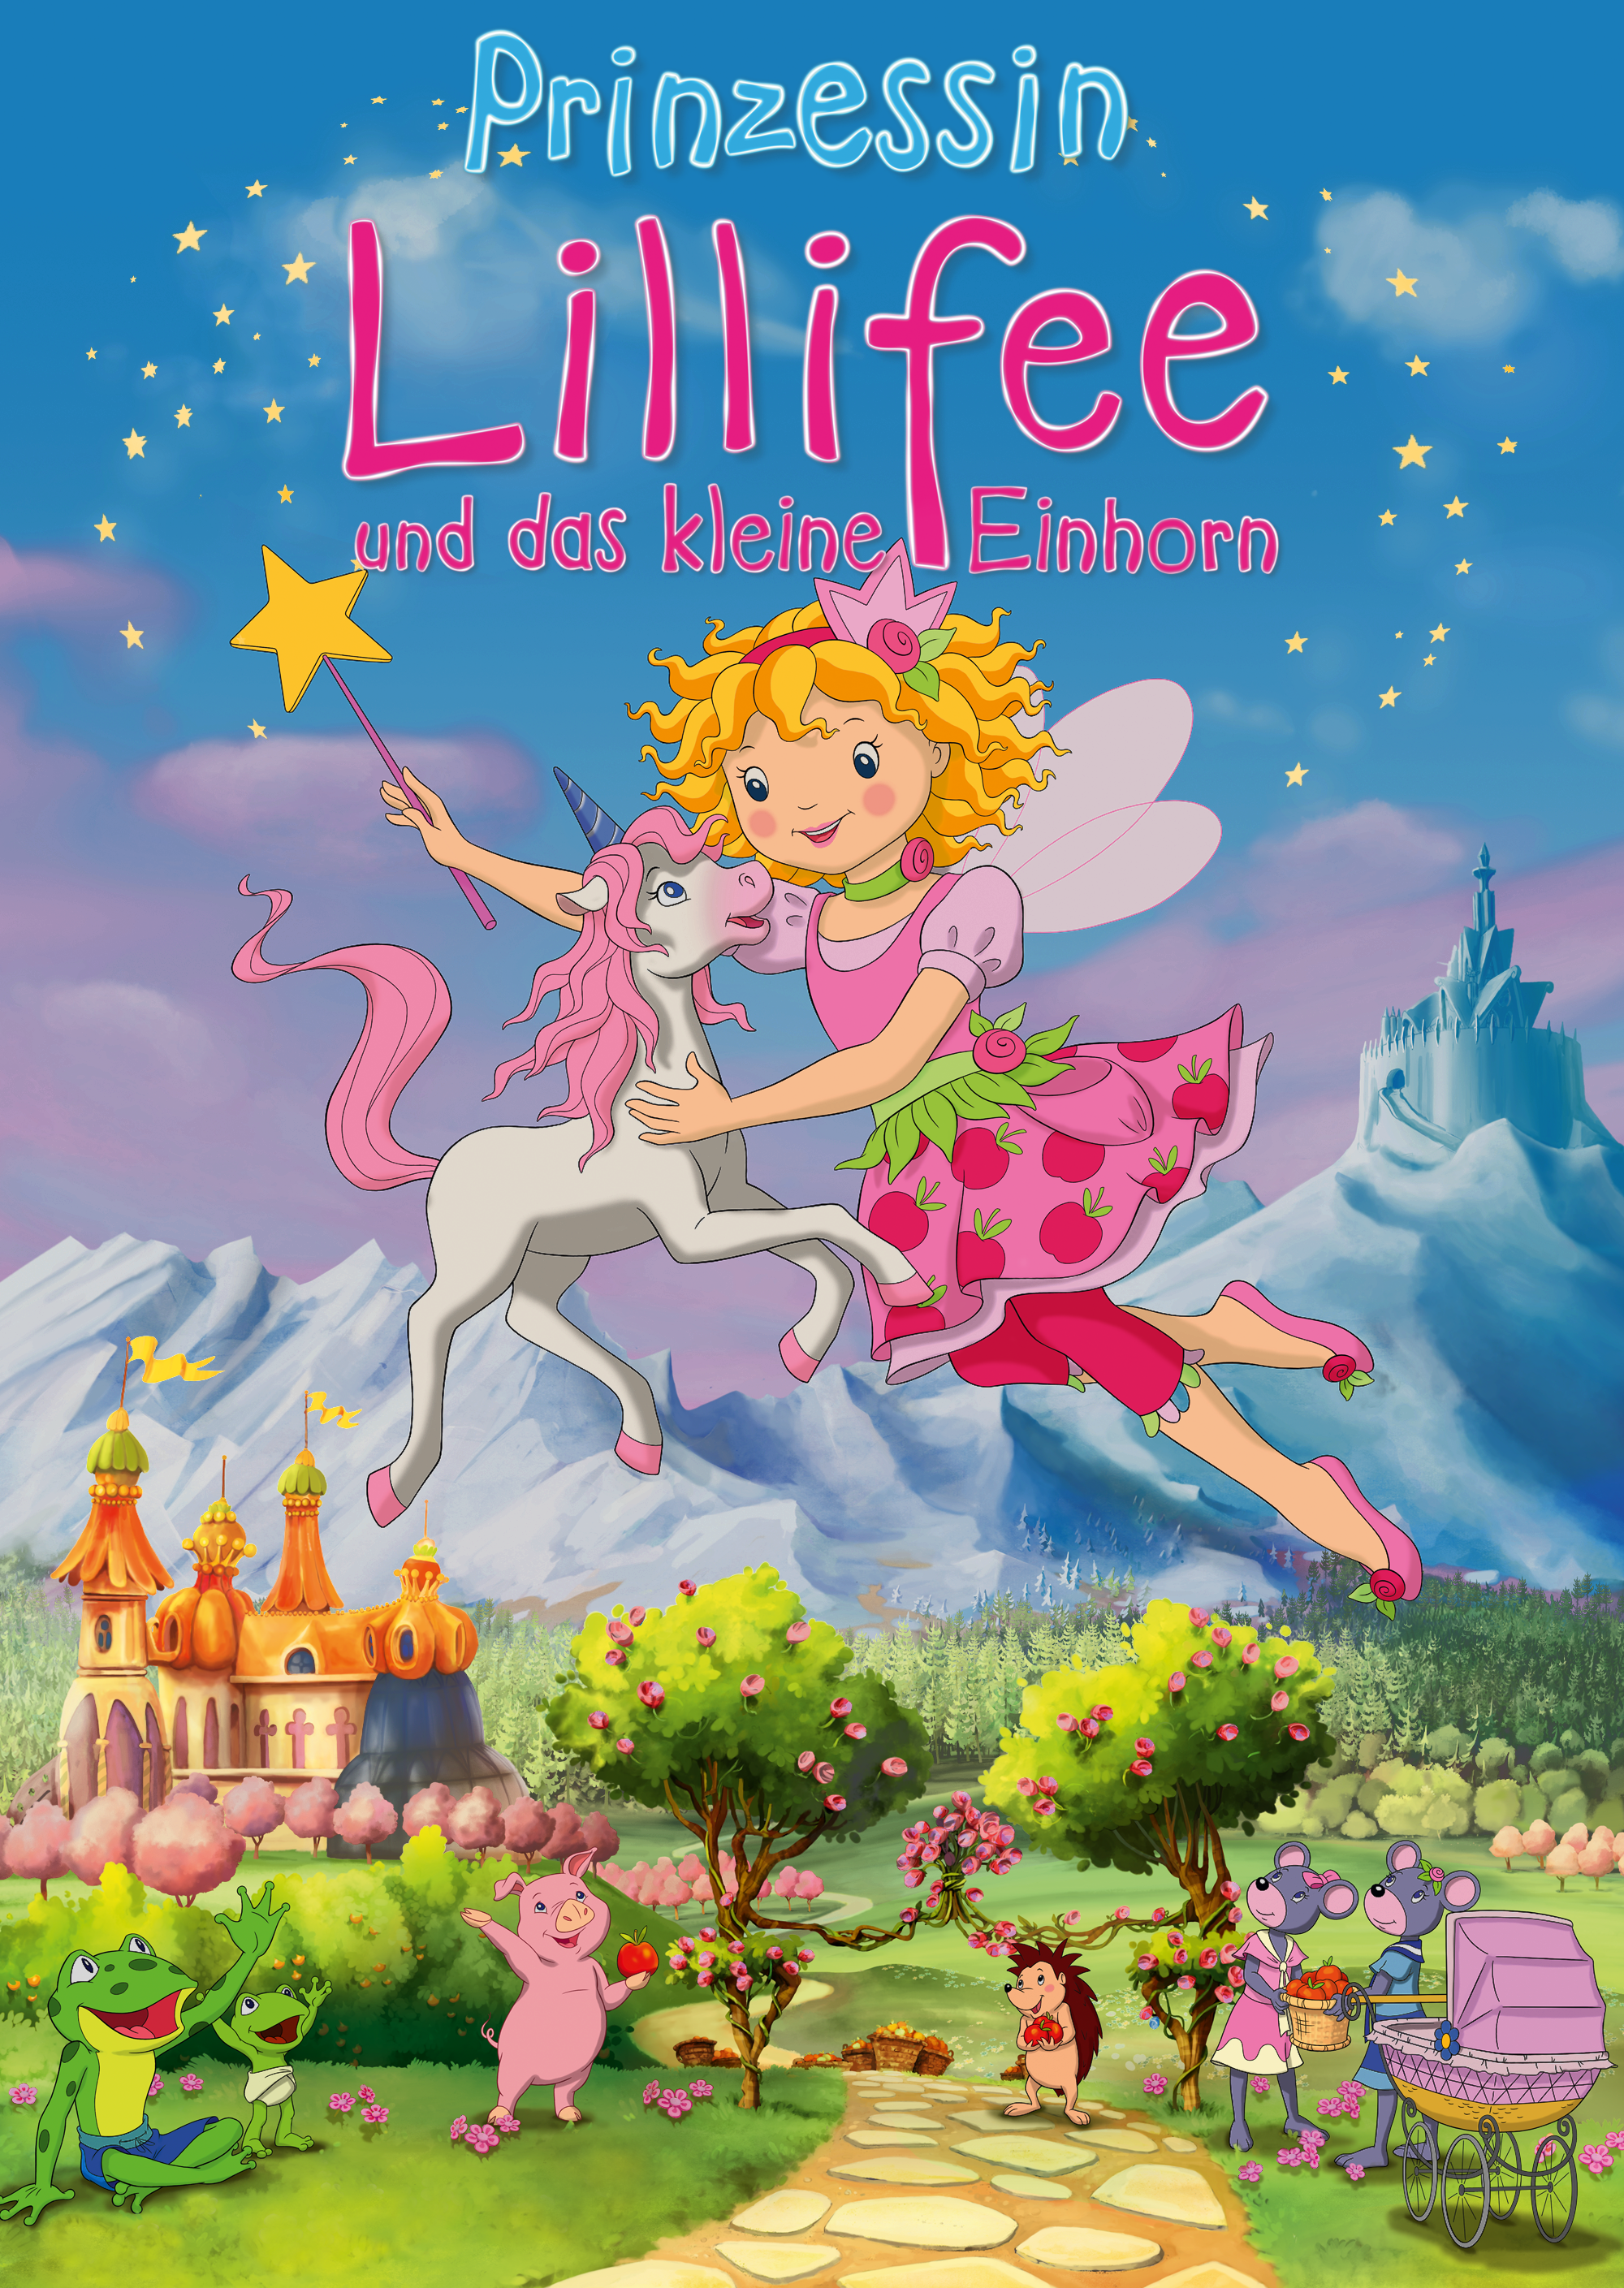 Prinzessin Lillifee und das kleine Einhorn 2011